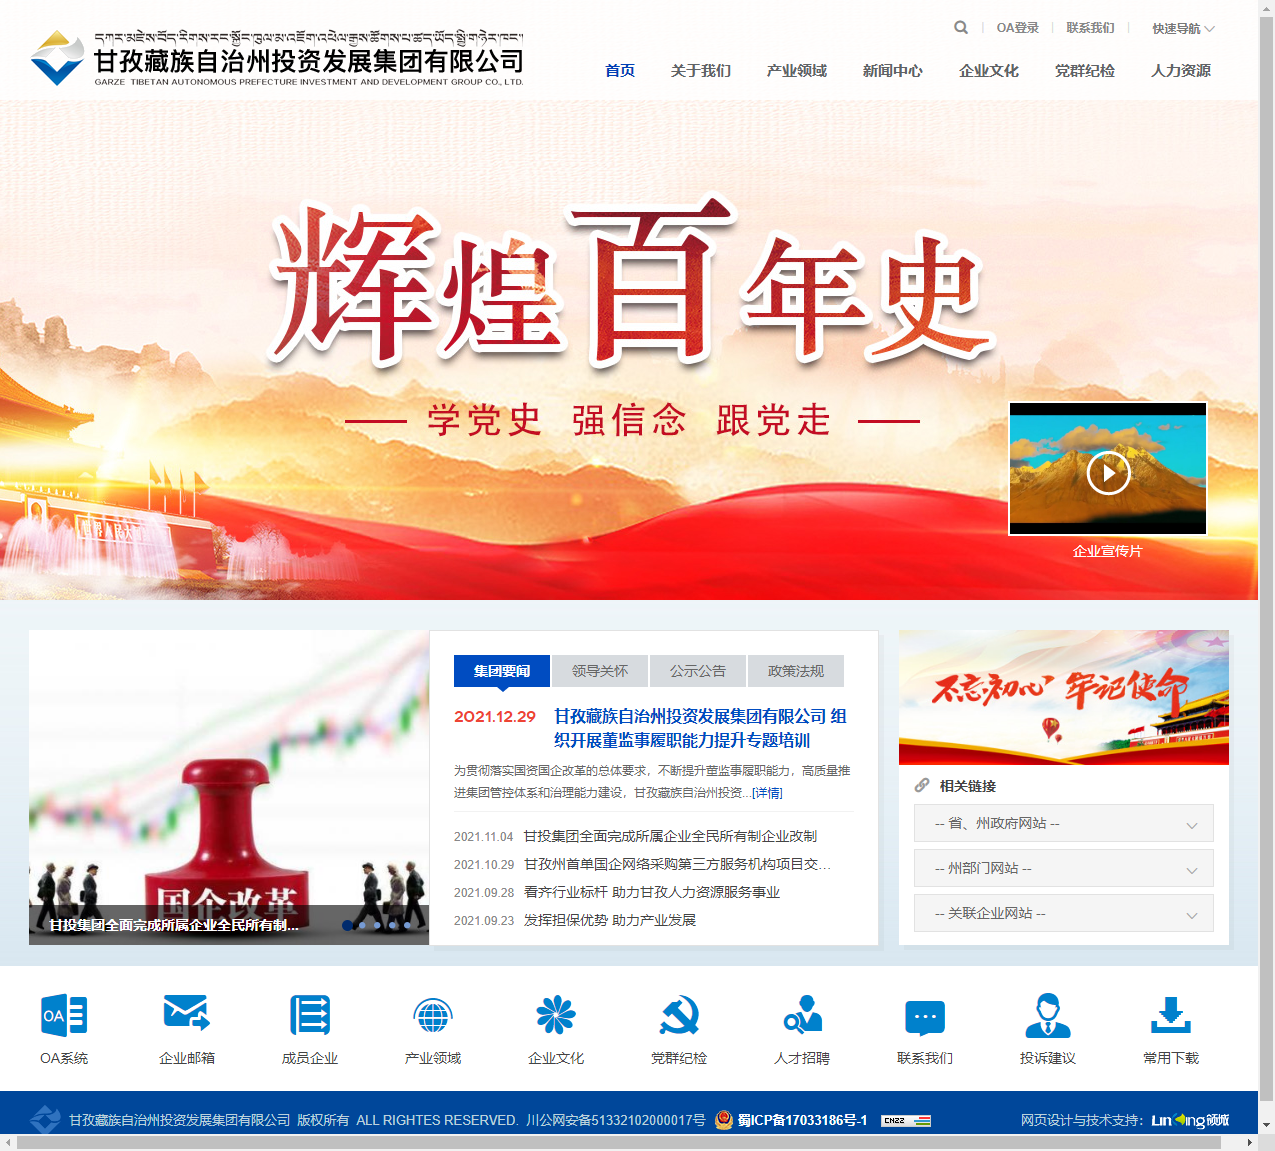 甘孜藏族自治州投资发展集团有限公司网站案例